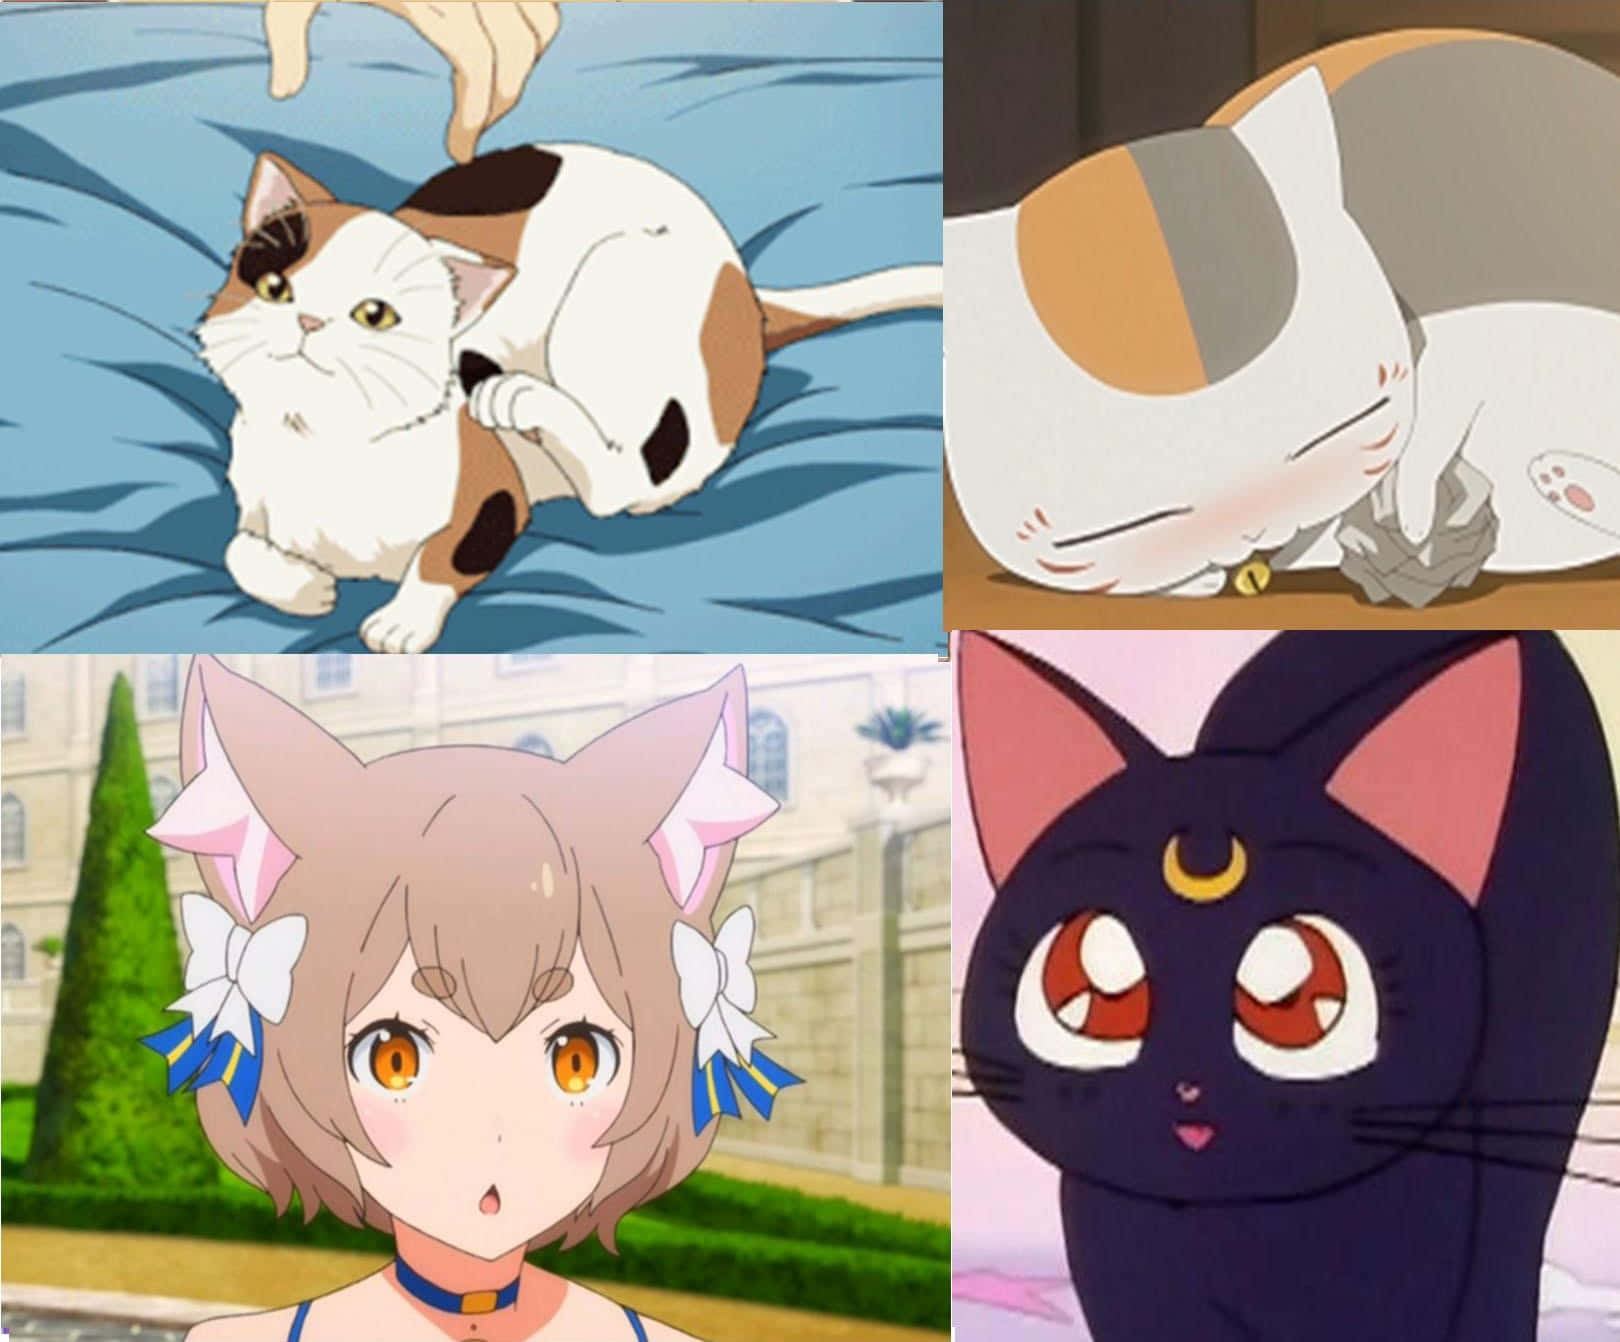 Einefotocollage Von Anime-katzen Mit Unterschiedlichen Gesichtsausdrücken.